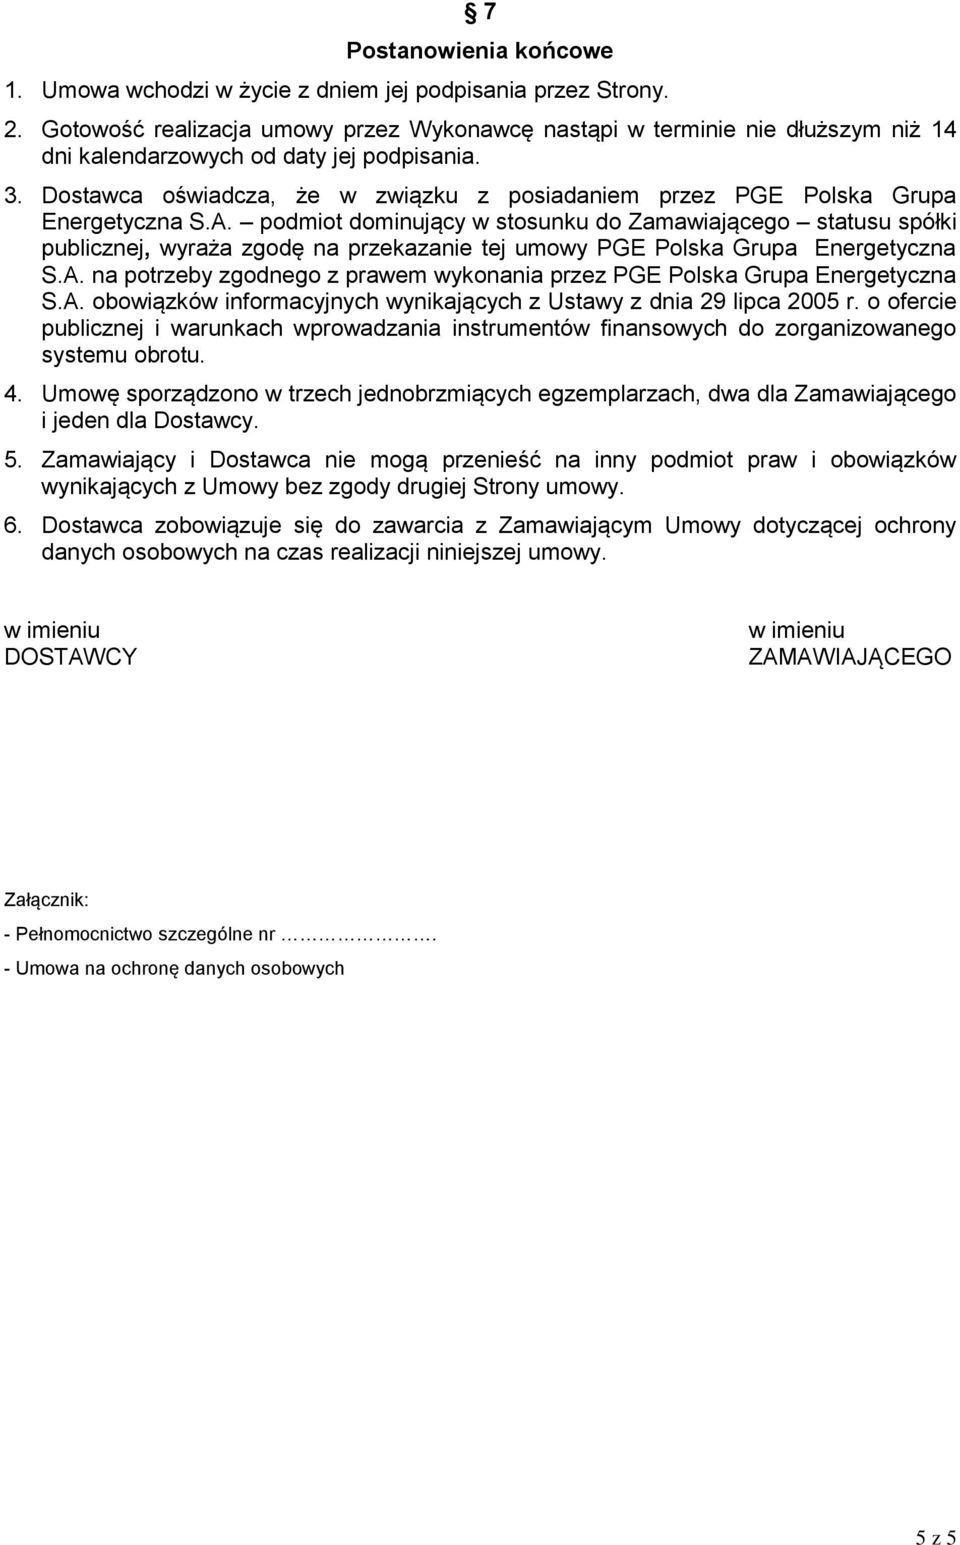 Dostawca oświadcza, że w związku z posiadaniem przez PGE Polska Grupa Energetyczna S.A.